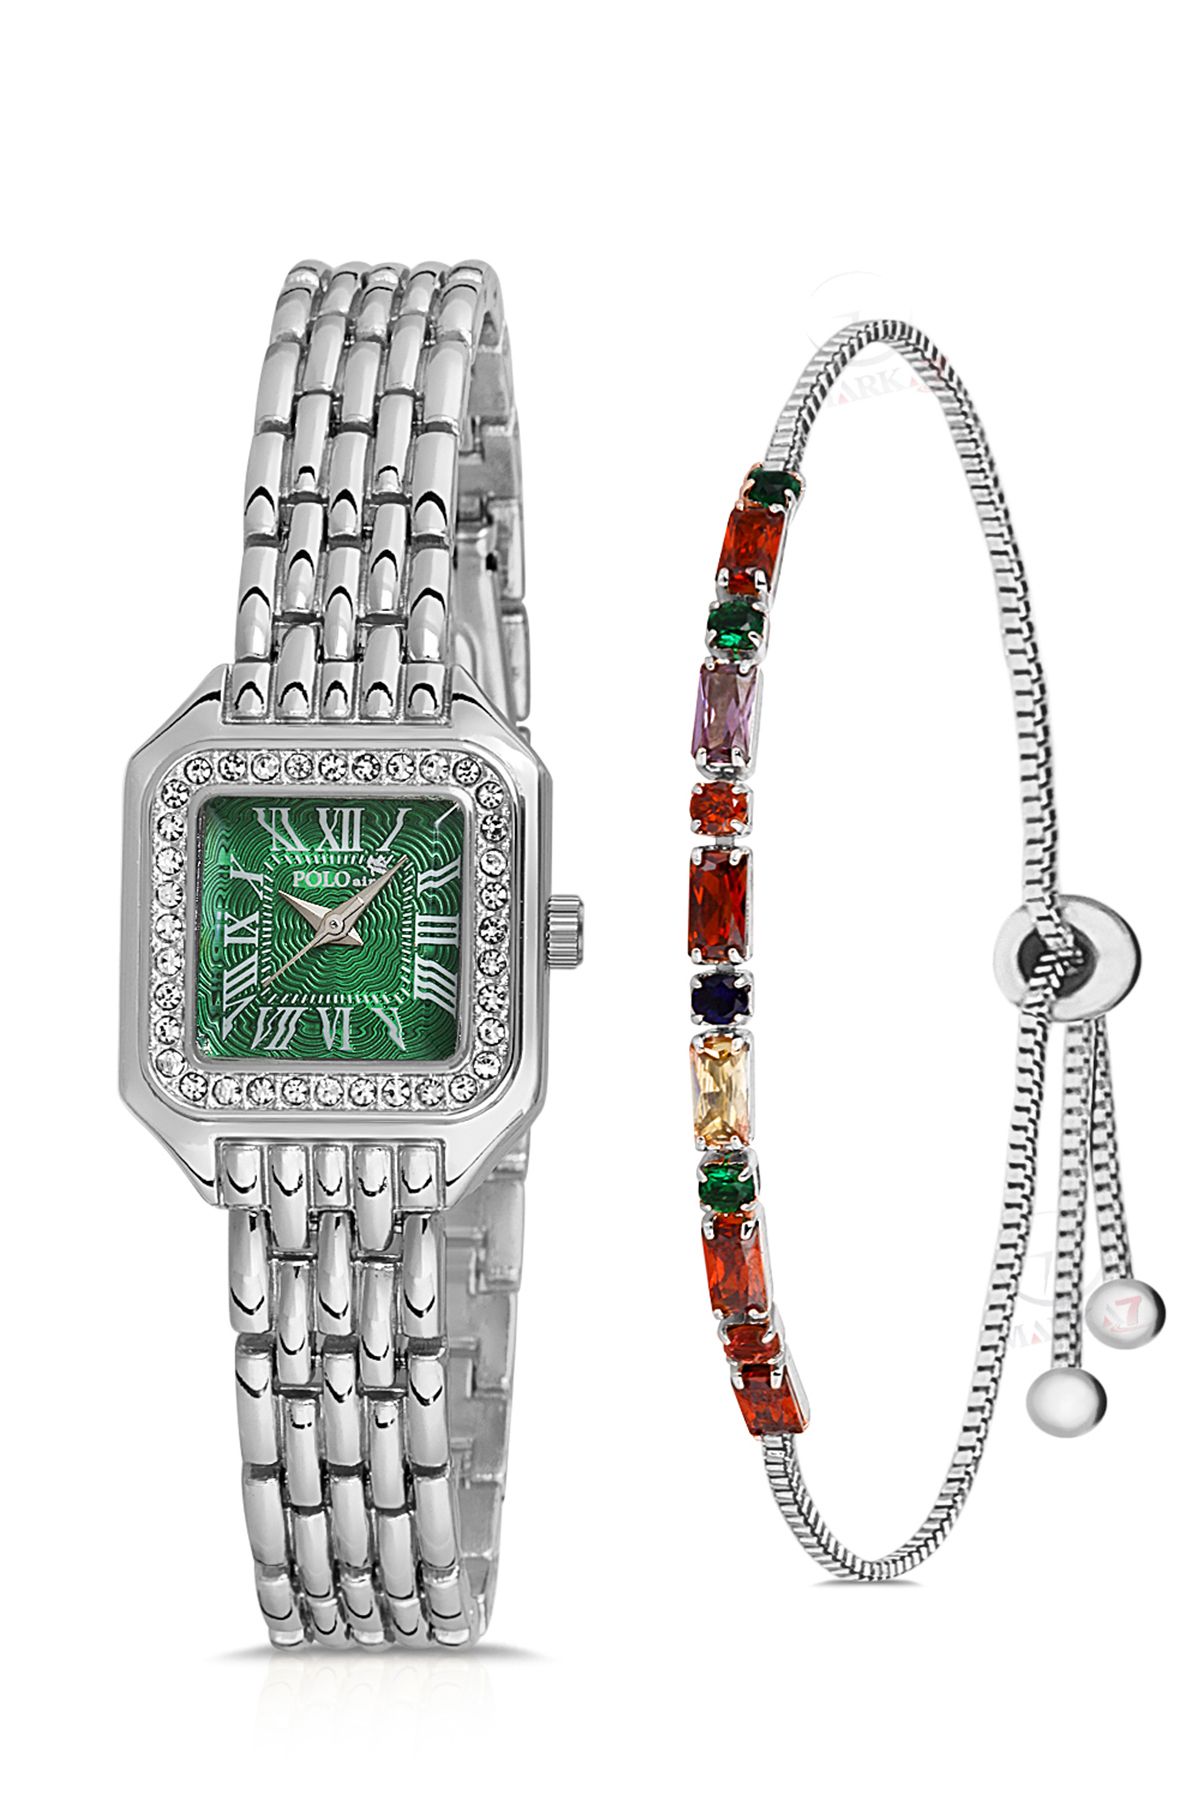 Romen Rakamlı Vintage Kadın Kol Saati Ve Zirkon Renkli Taşlı Bileklik Hediye Yeşil Pl-1475B4 Gümüş İçi Yeşil Pl-1475B4